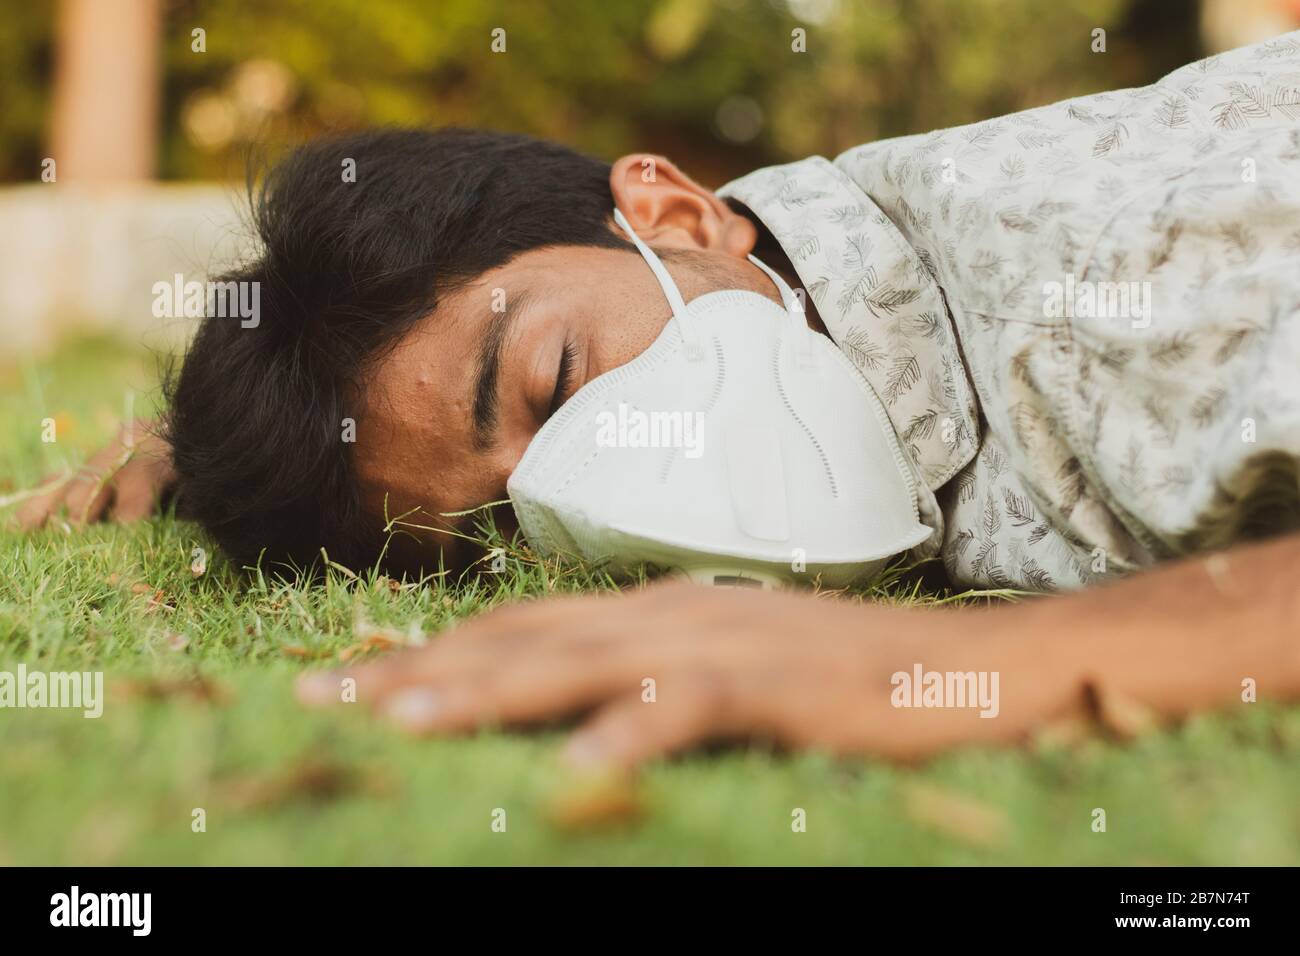 Der kranke junge Mann fiel mit medizinischer Gesichtsmaske auf den Boden - das Konzept zeigt, dass er krank, schwindelig, krank, dehydriert oder sonnengeschlagen ist. Stockfoto